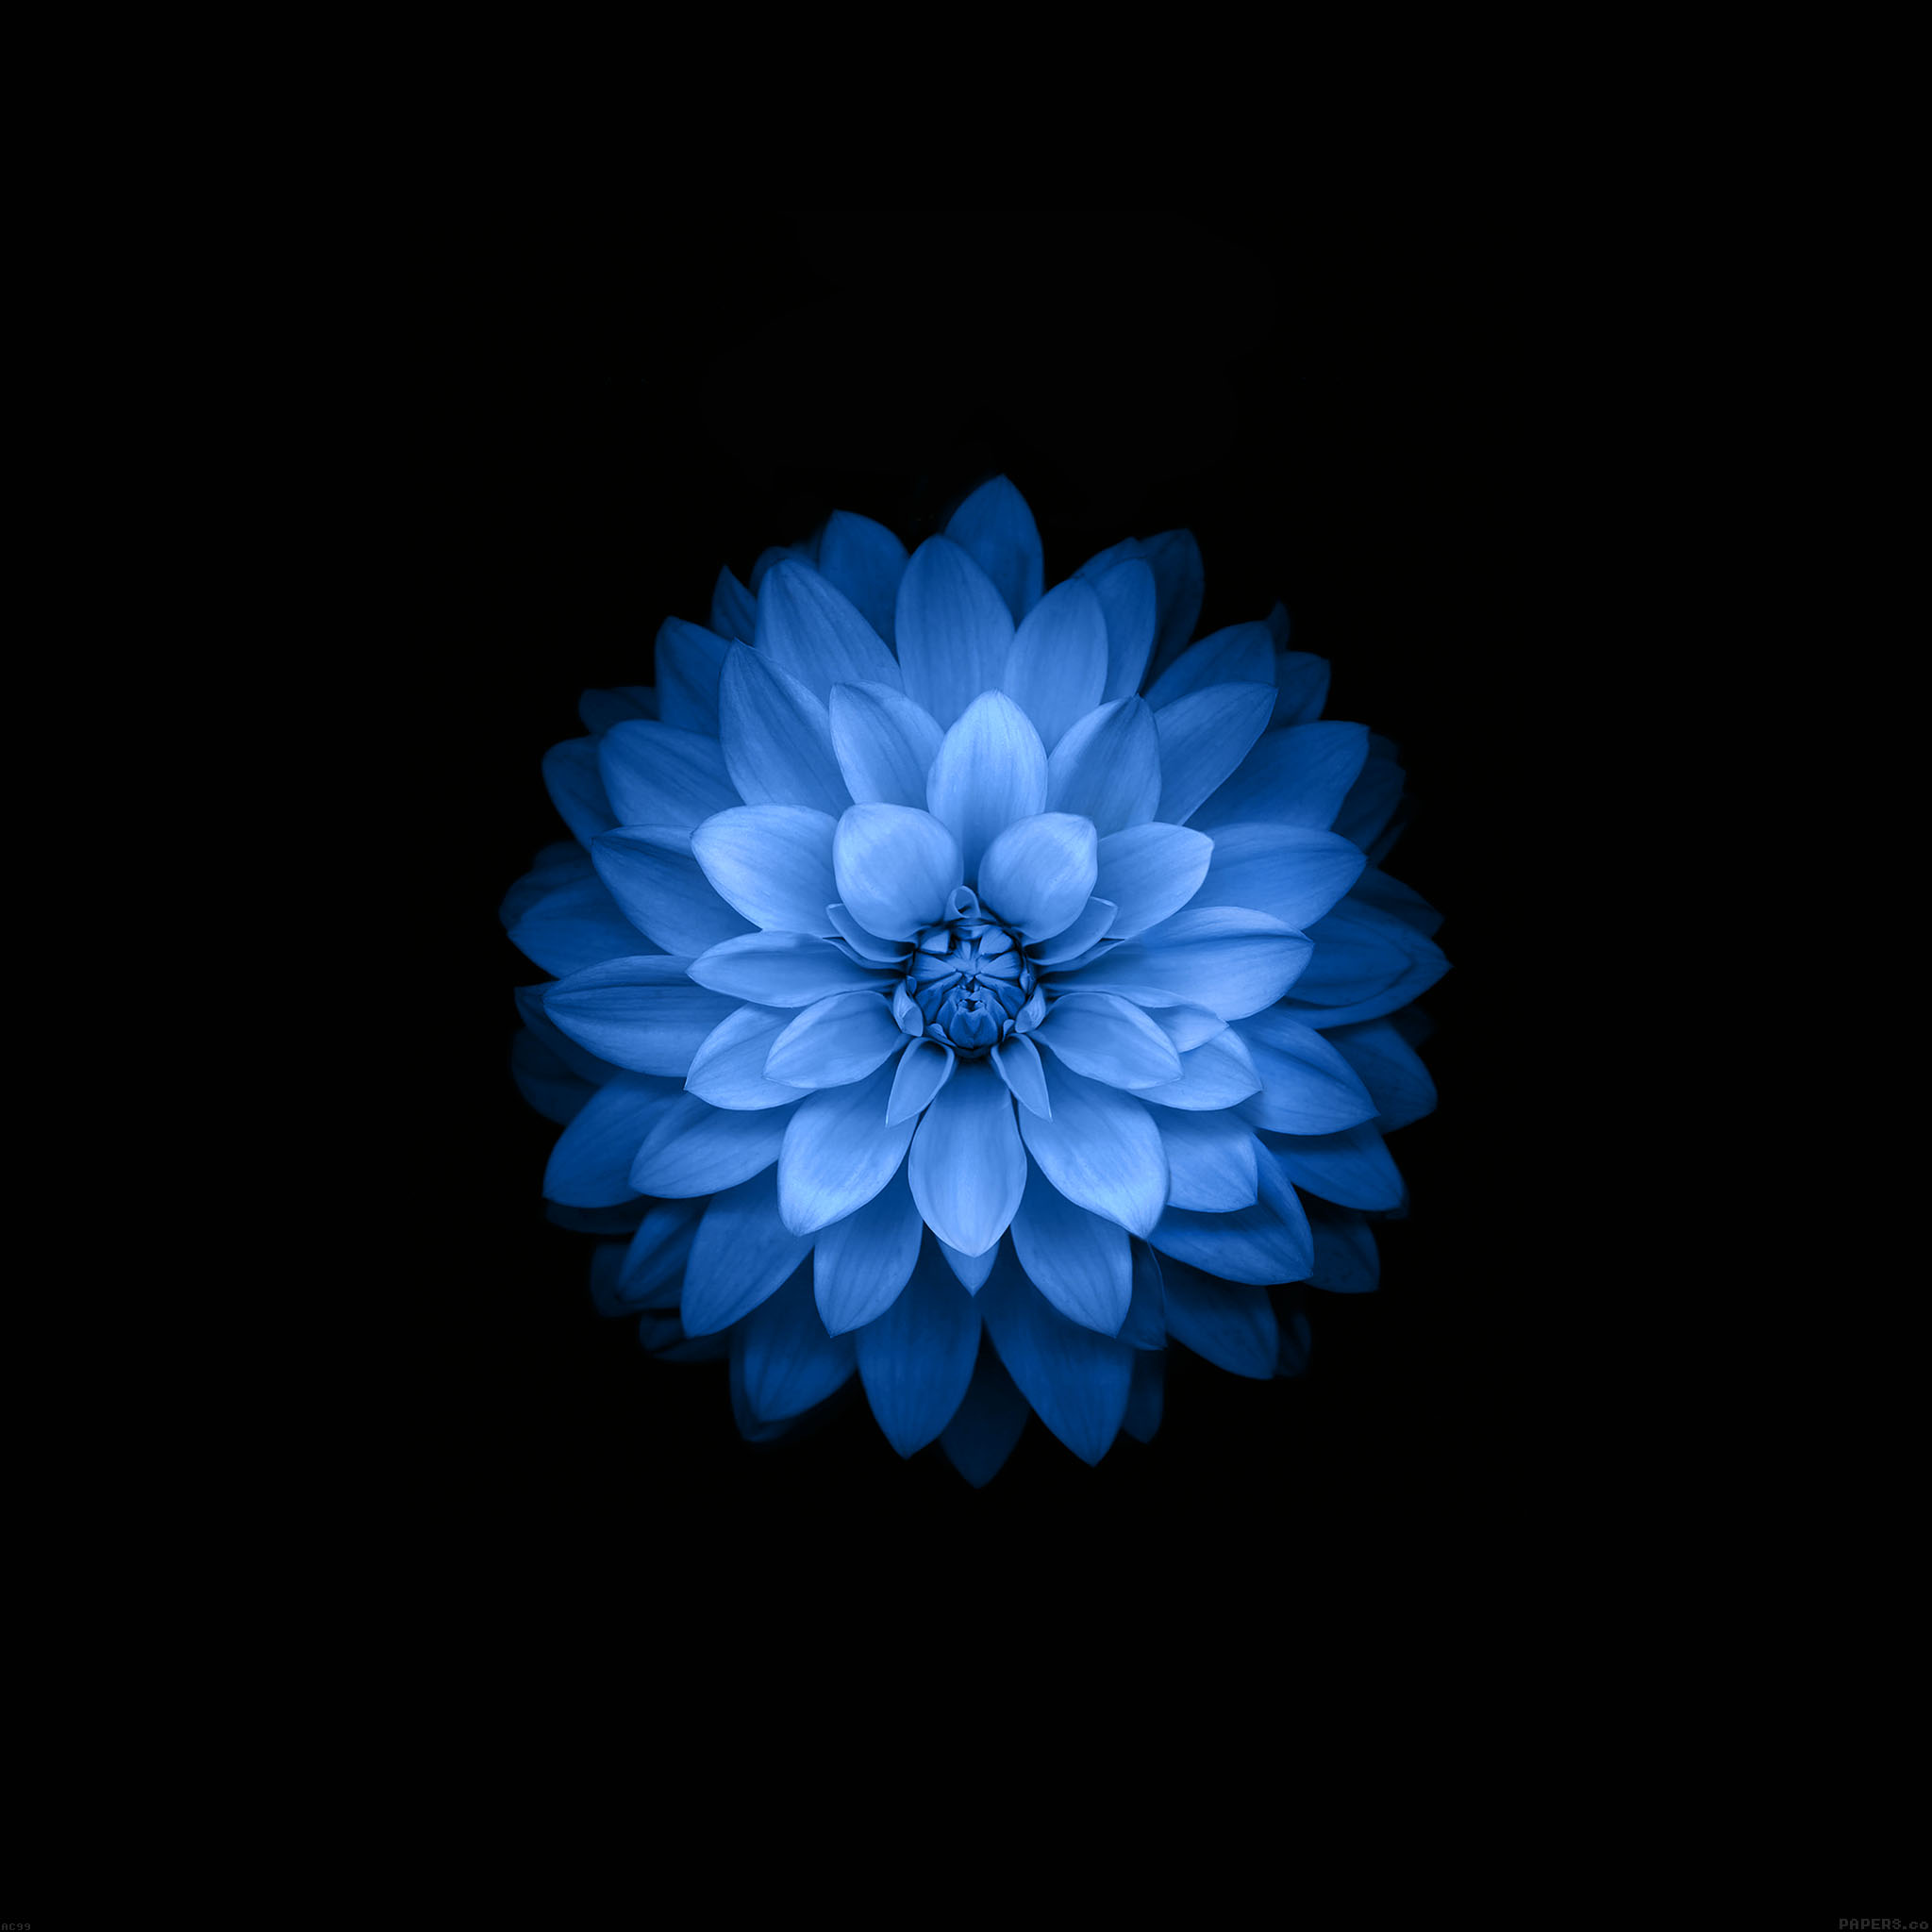 70以上 Iphone 壁紙 青い花 最もダウンロードされたhd壁紙画像